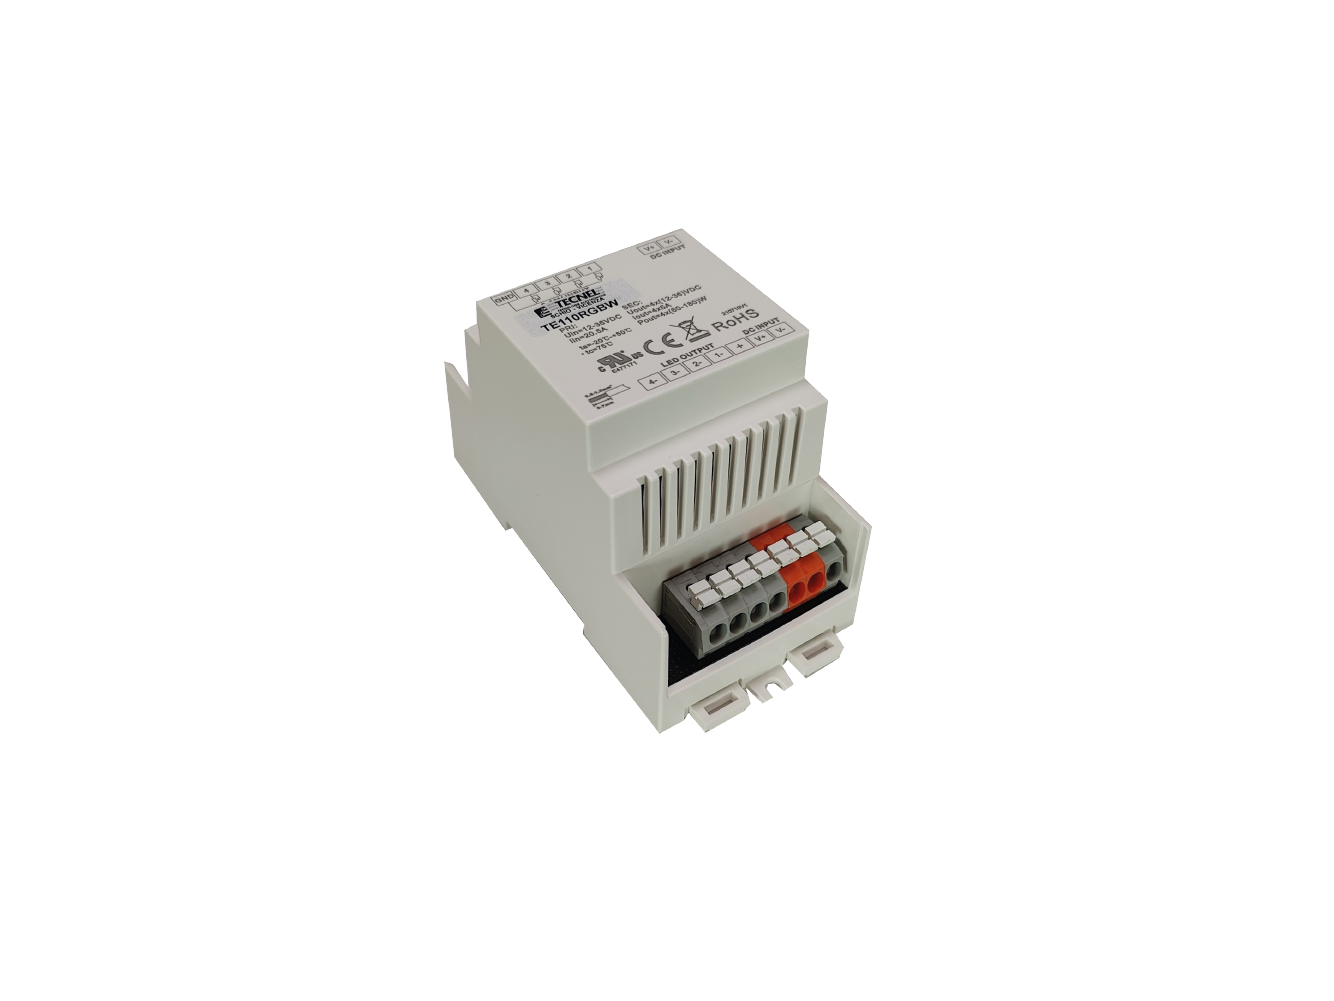 TEDALIRGBW - Dimmer STRIP LED  DALI RGBW 12-36Vcc 20A DIN 3 Moduli